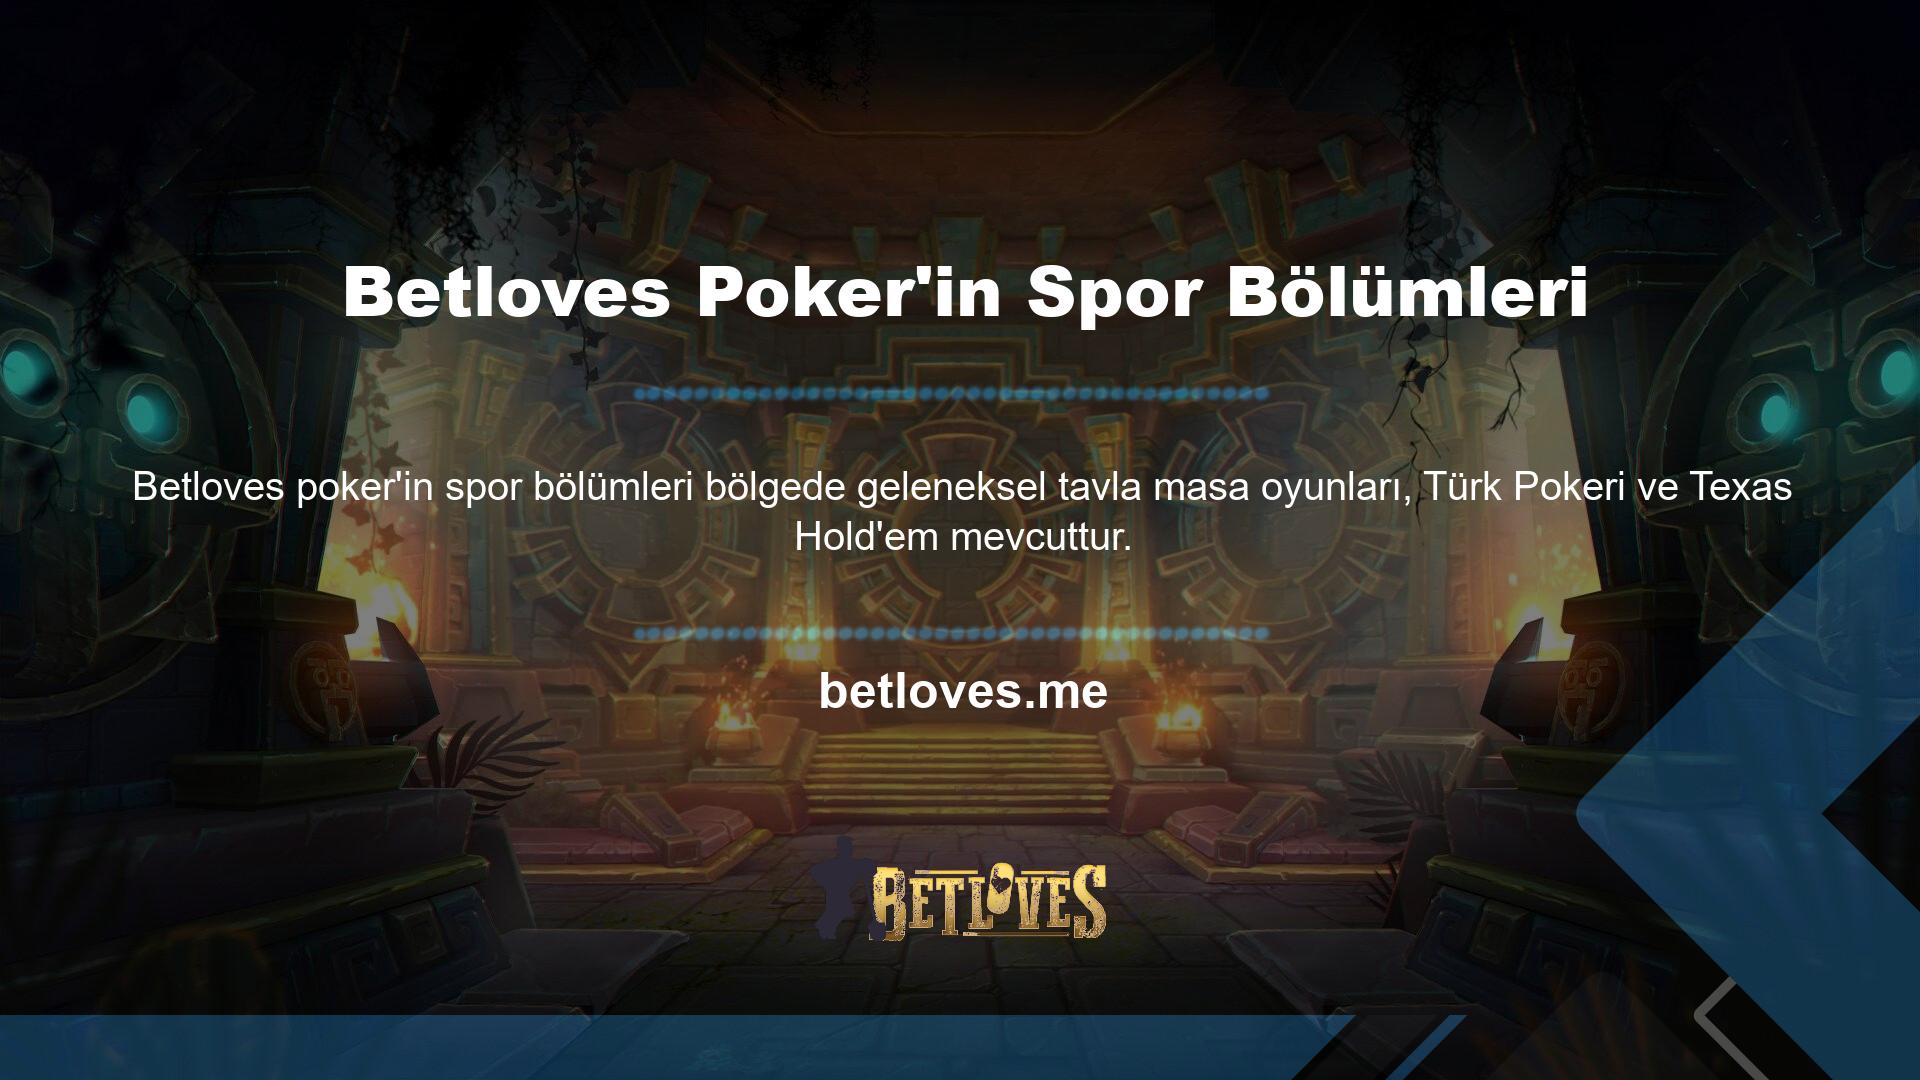 Windows veya Mac bilgisayarınızda yapılandırma dosyasını açarak Betloves poker sporları bölümlerini indirebilirsiniz